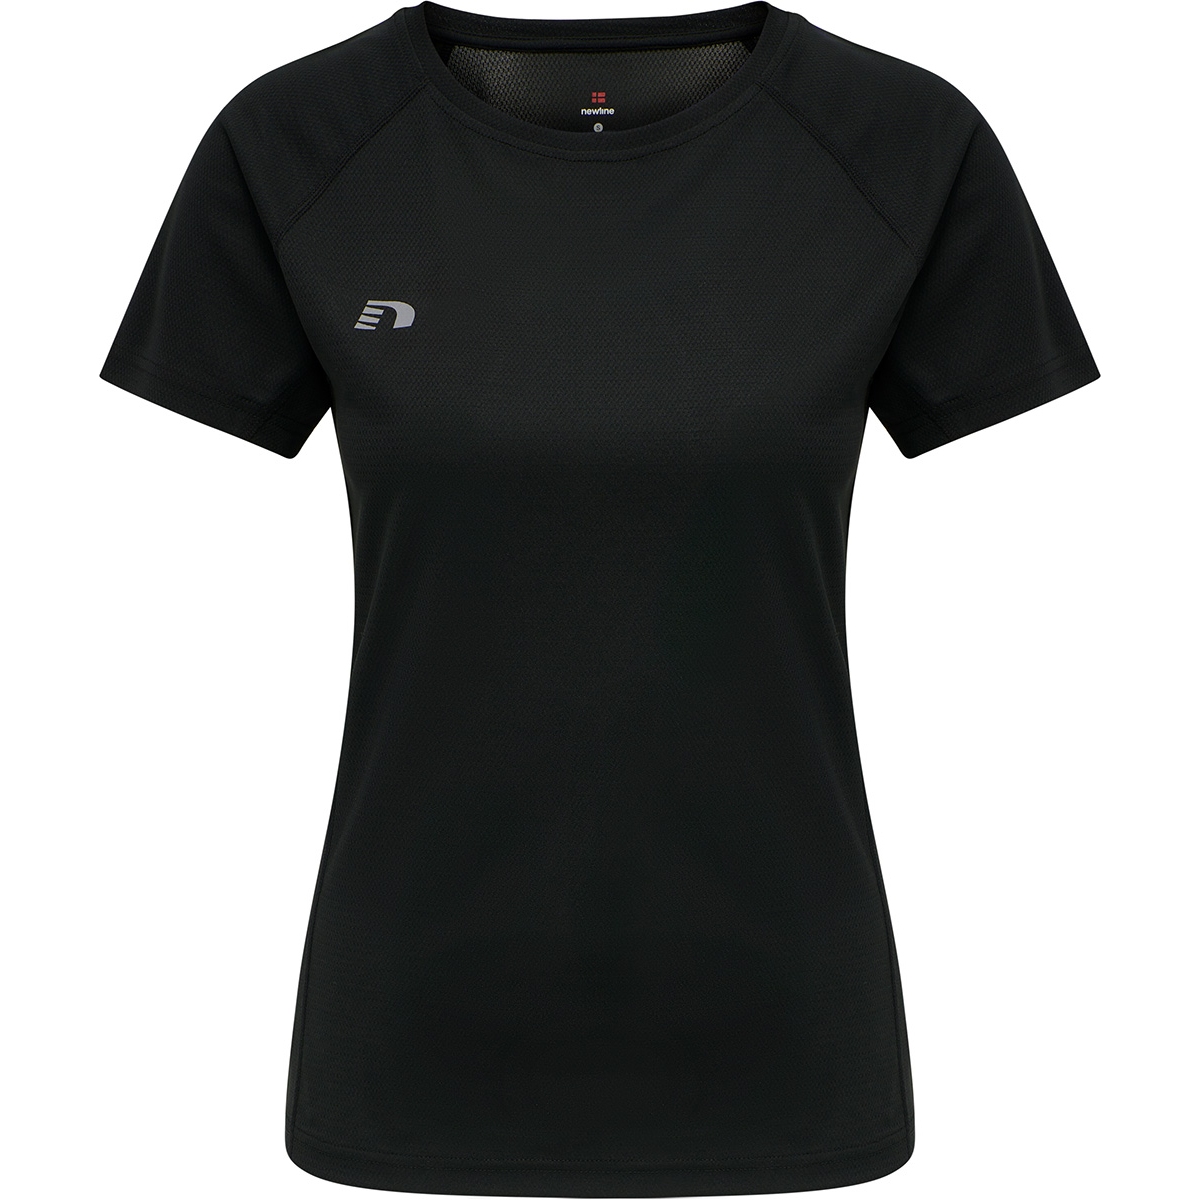 Produktbild von Newline Core Running T-Shirt Damen - schwarz